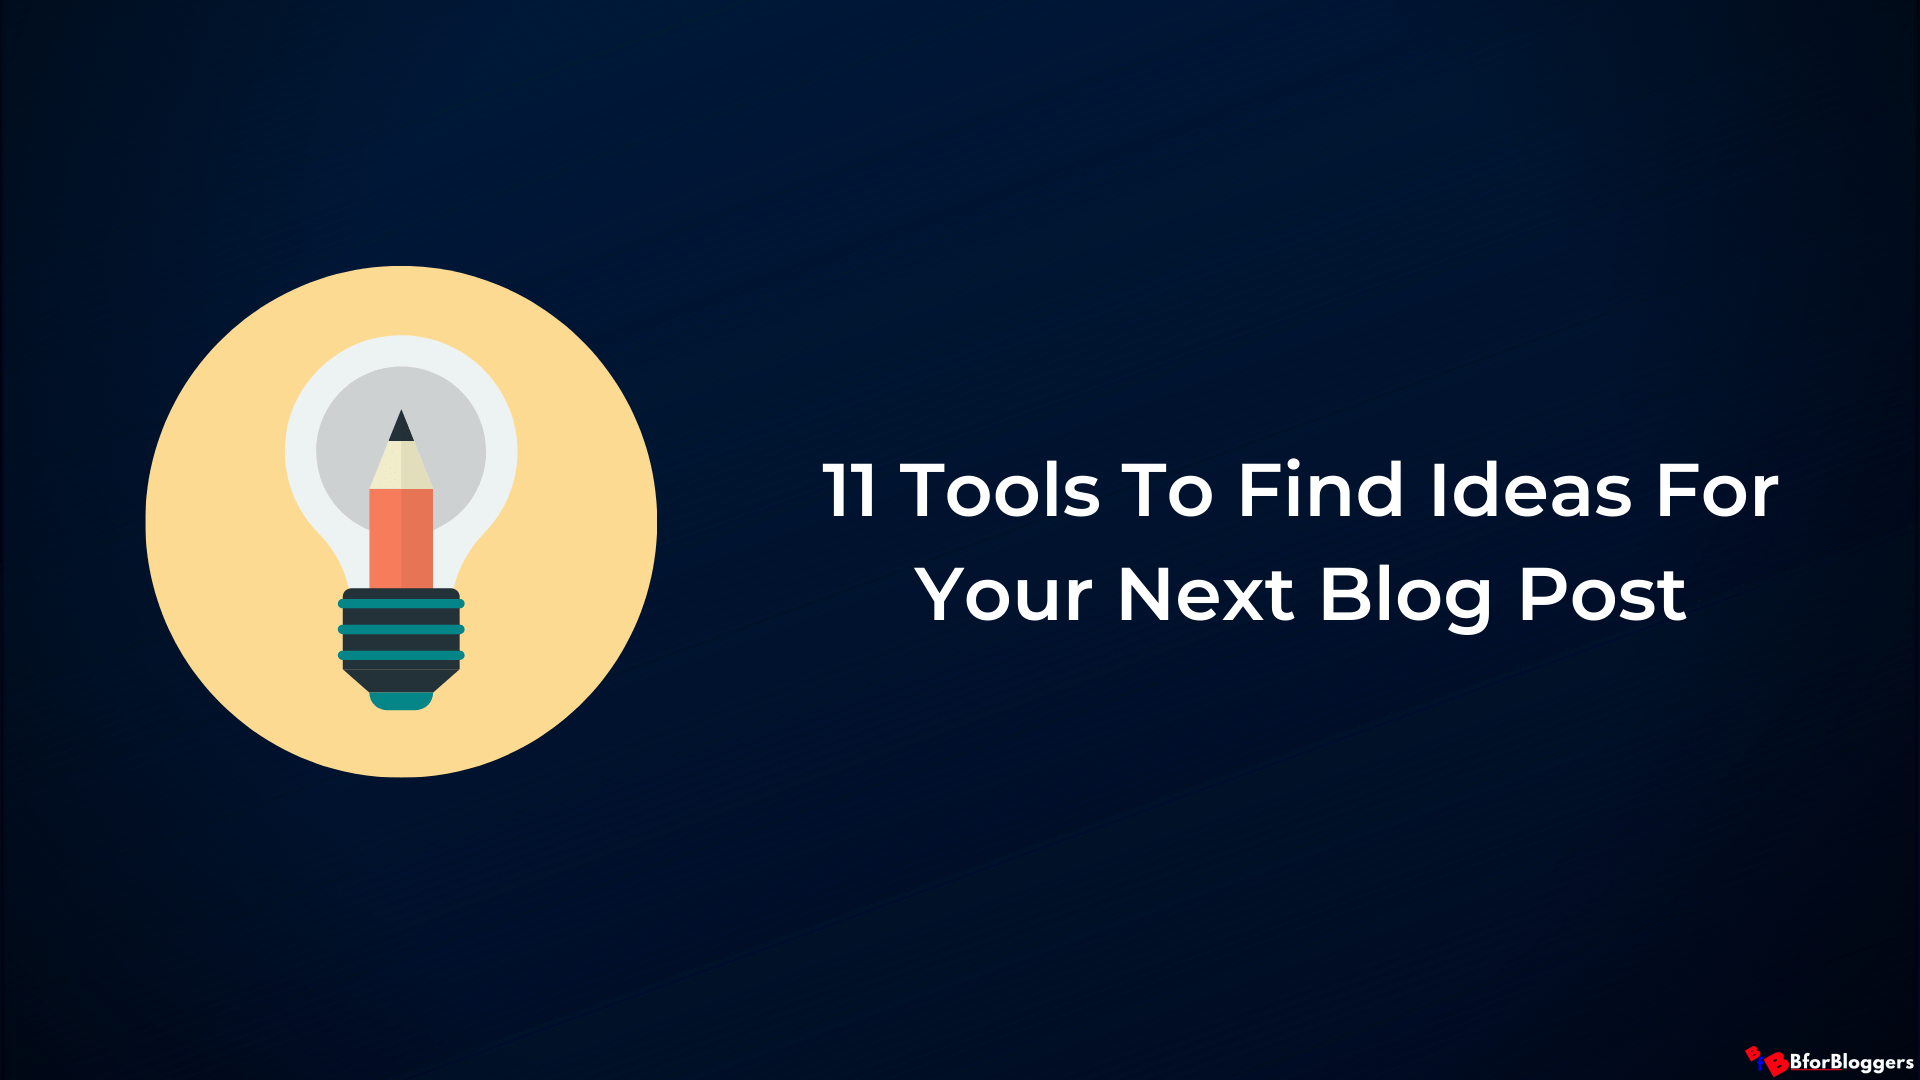 11 meilleurs outils pour découvrir de nouveaux sujets pour votre blog